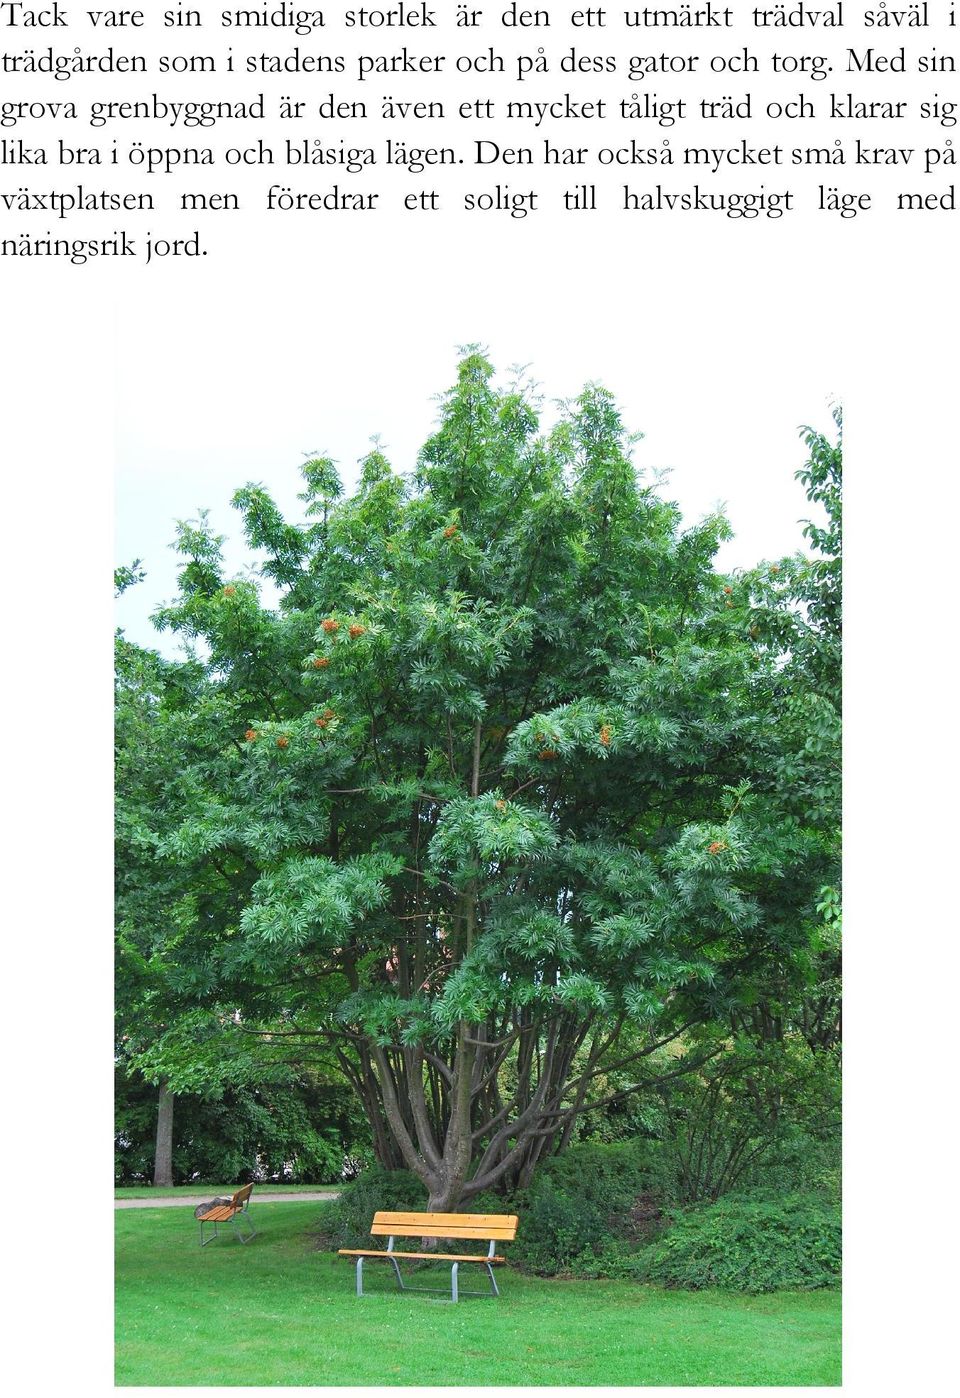 Med sin grova grenbyggnad är den även ett mycket tåligt träd och klarar sig lika bra i